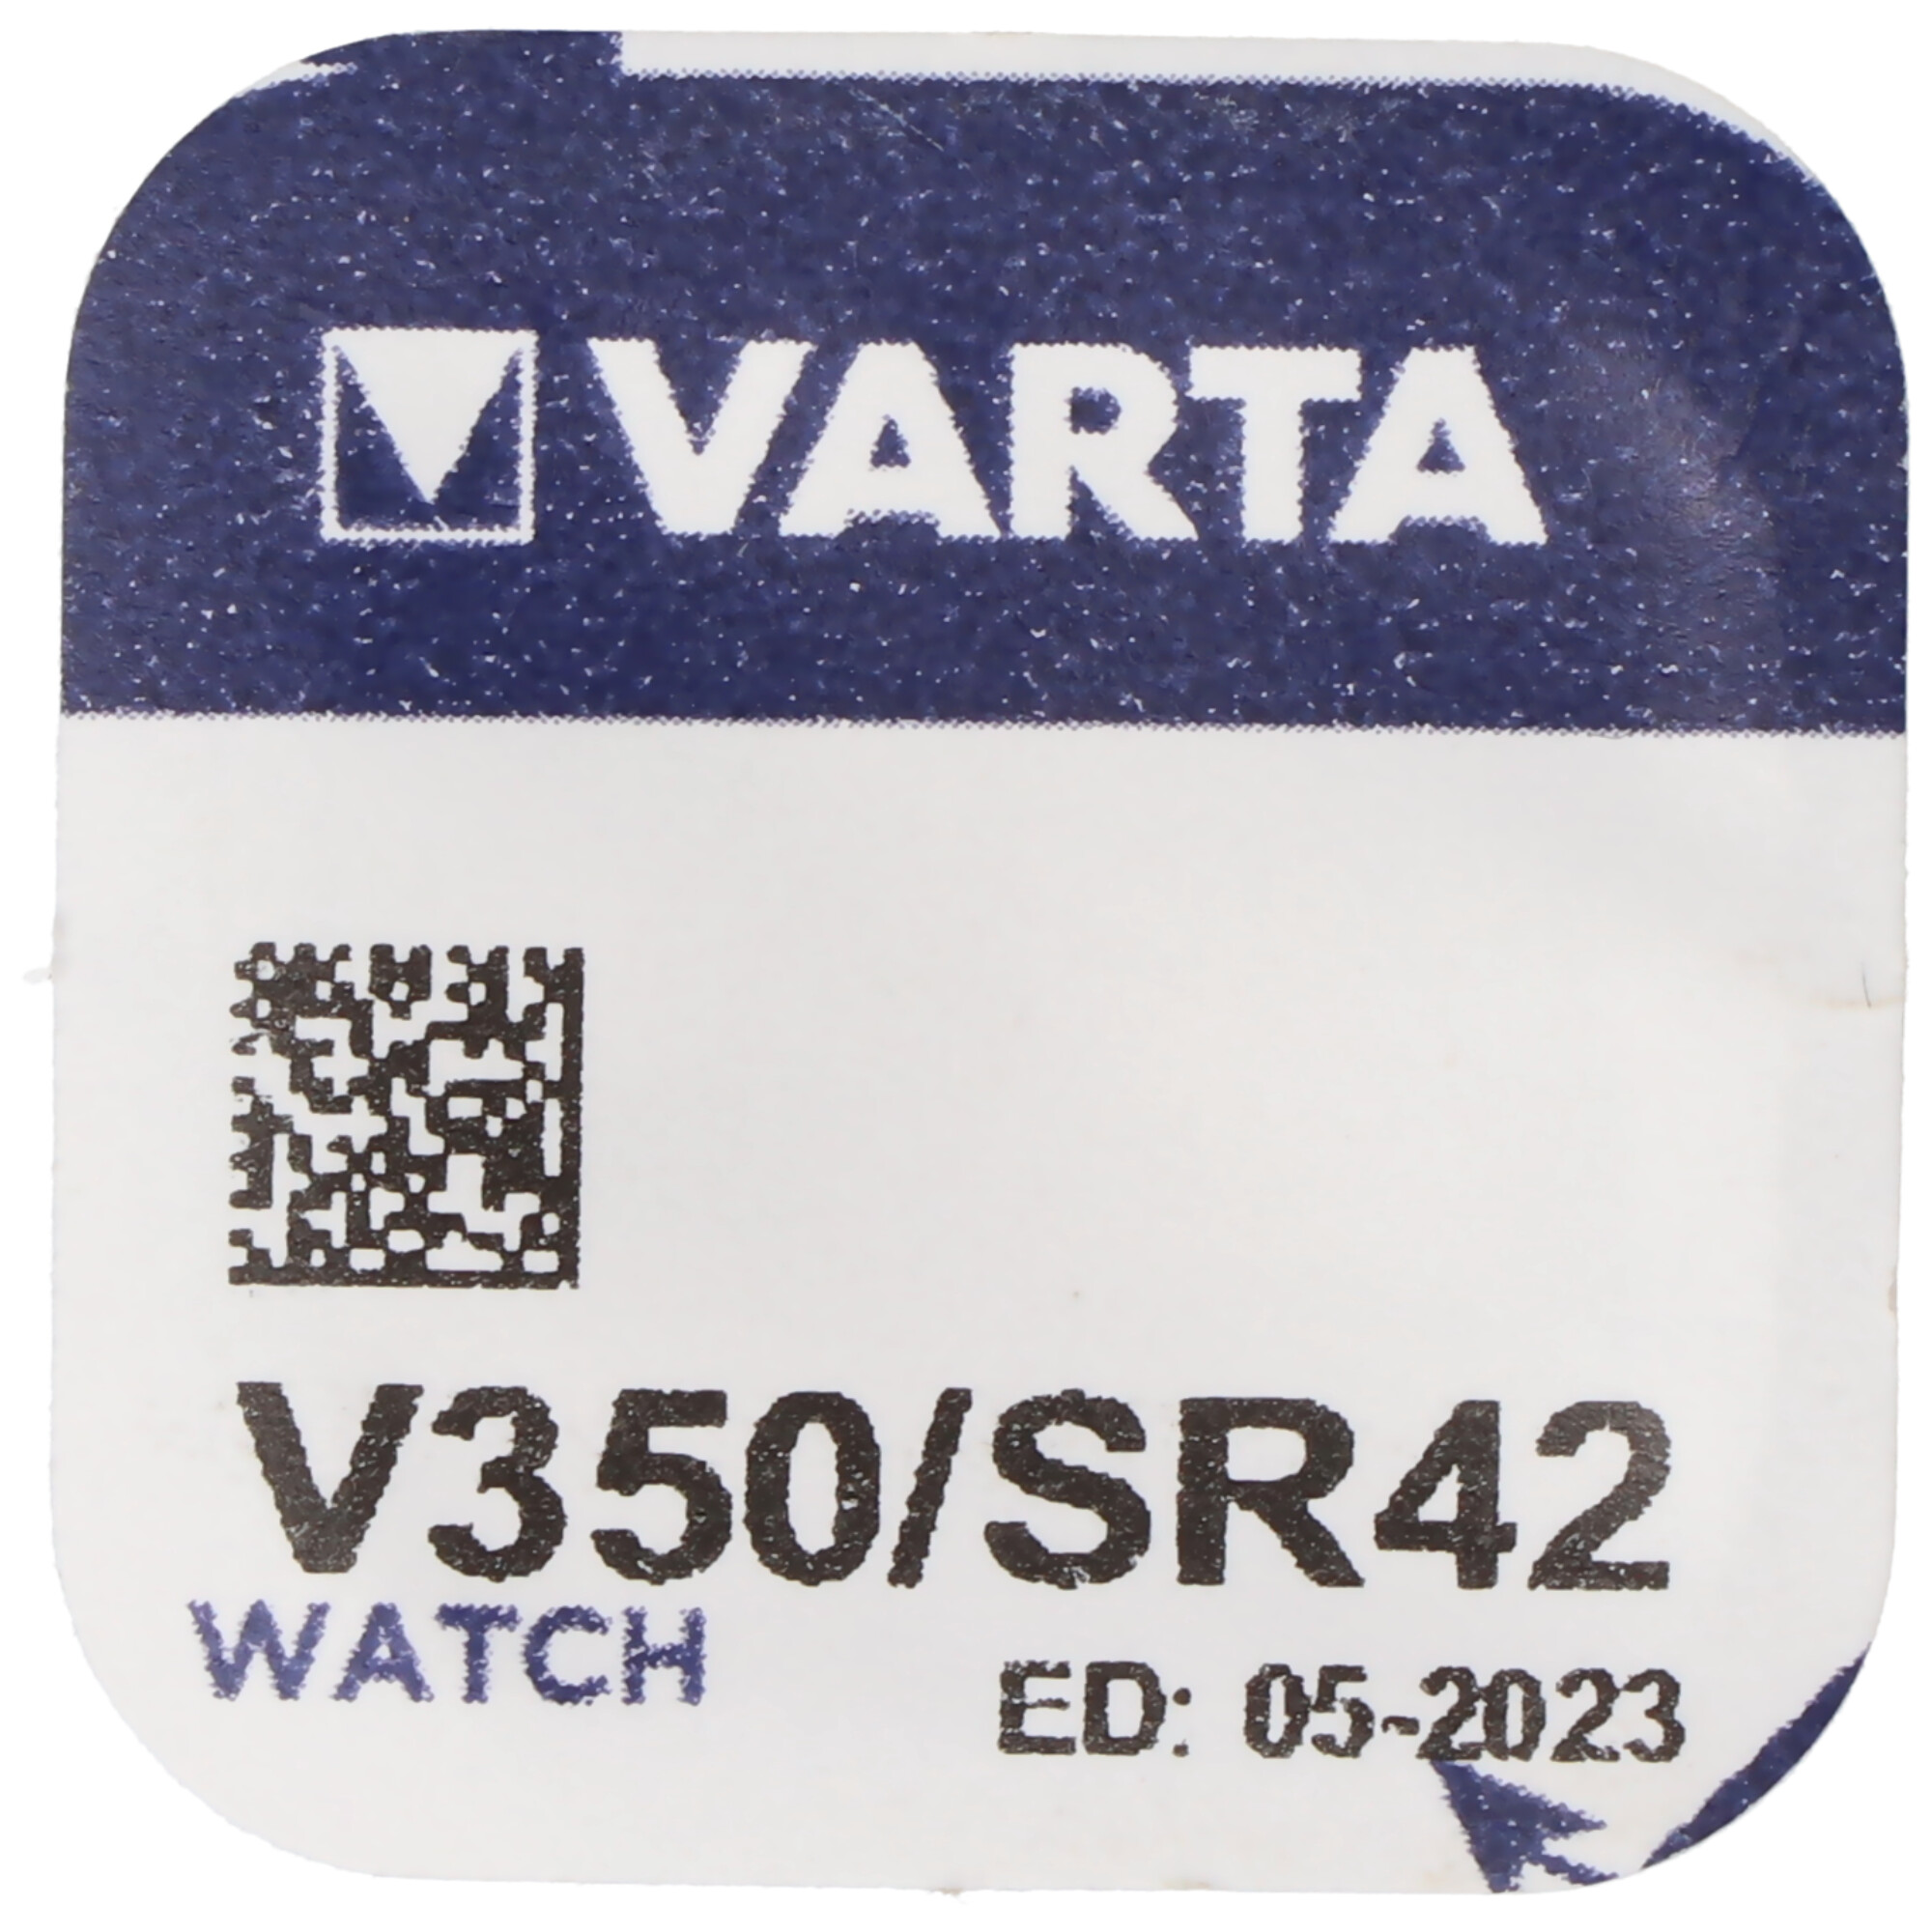 350, Varta V350, SR42, RW418 Knopfzelle für Uhren etc.